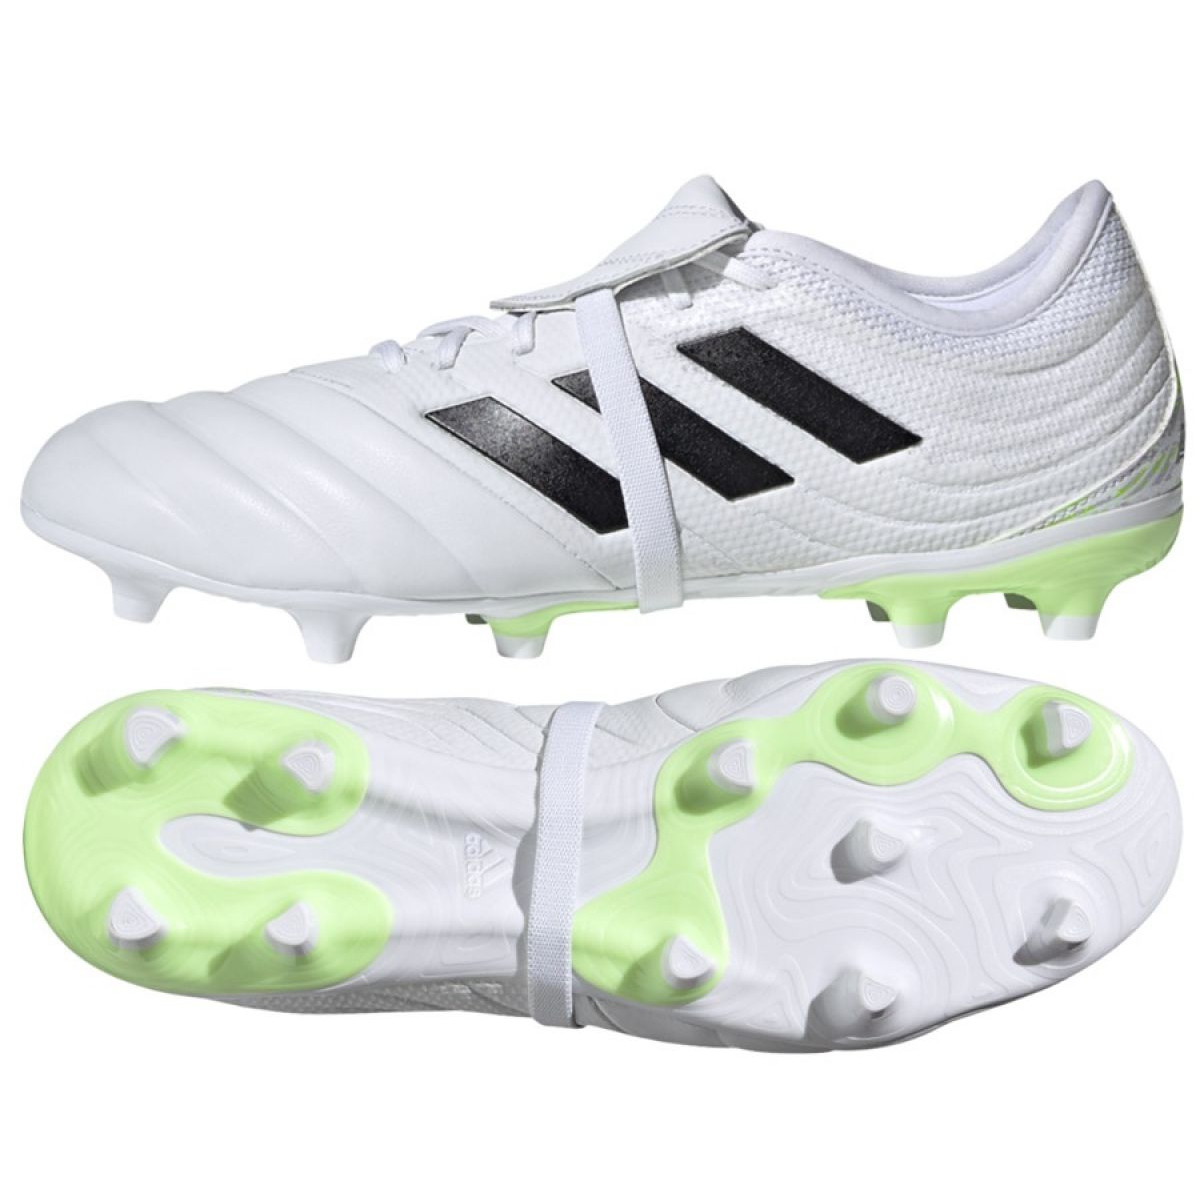 Buty piłkarskie adidas Copa Gloro 20.2 Fg M G28627 wielokolorowe białe